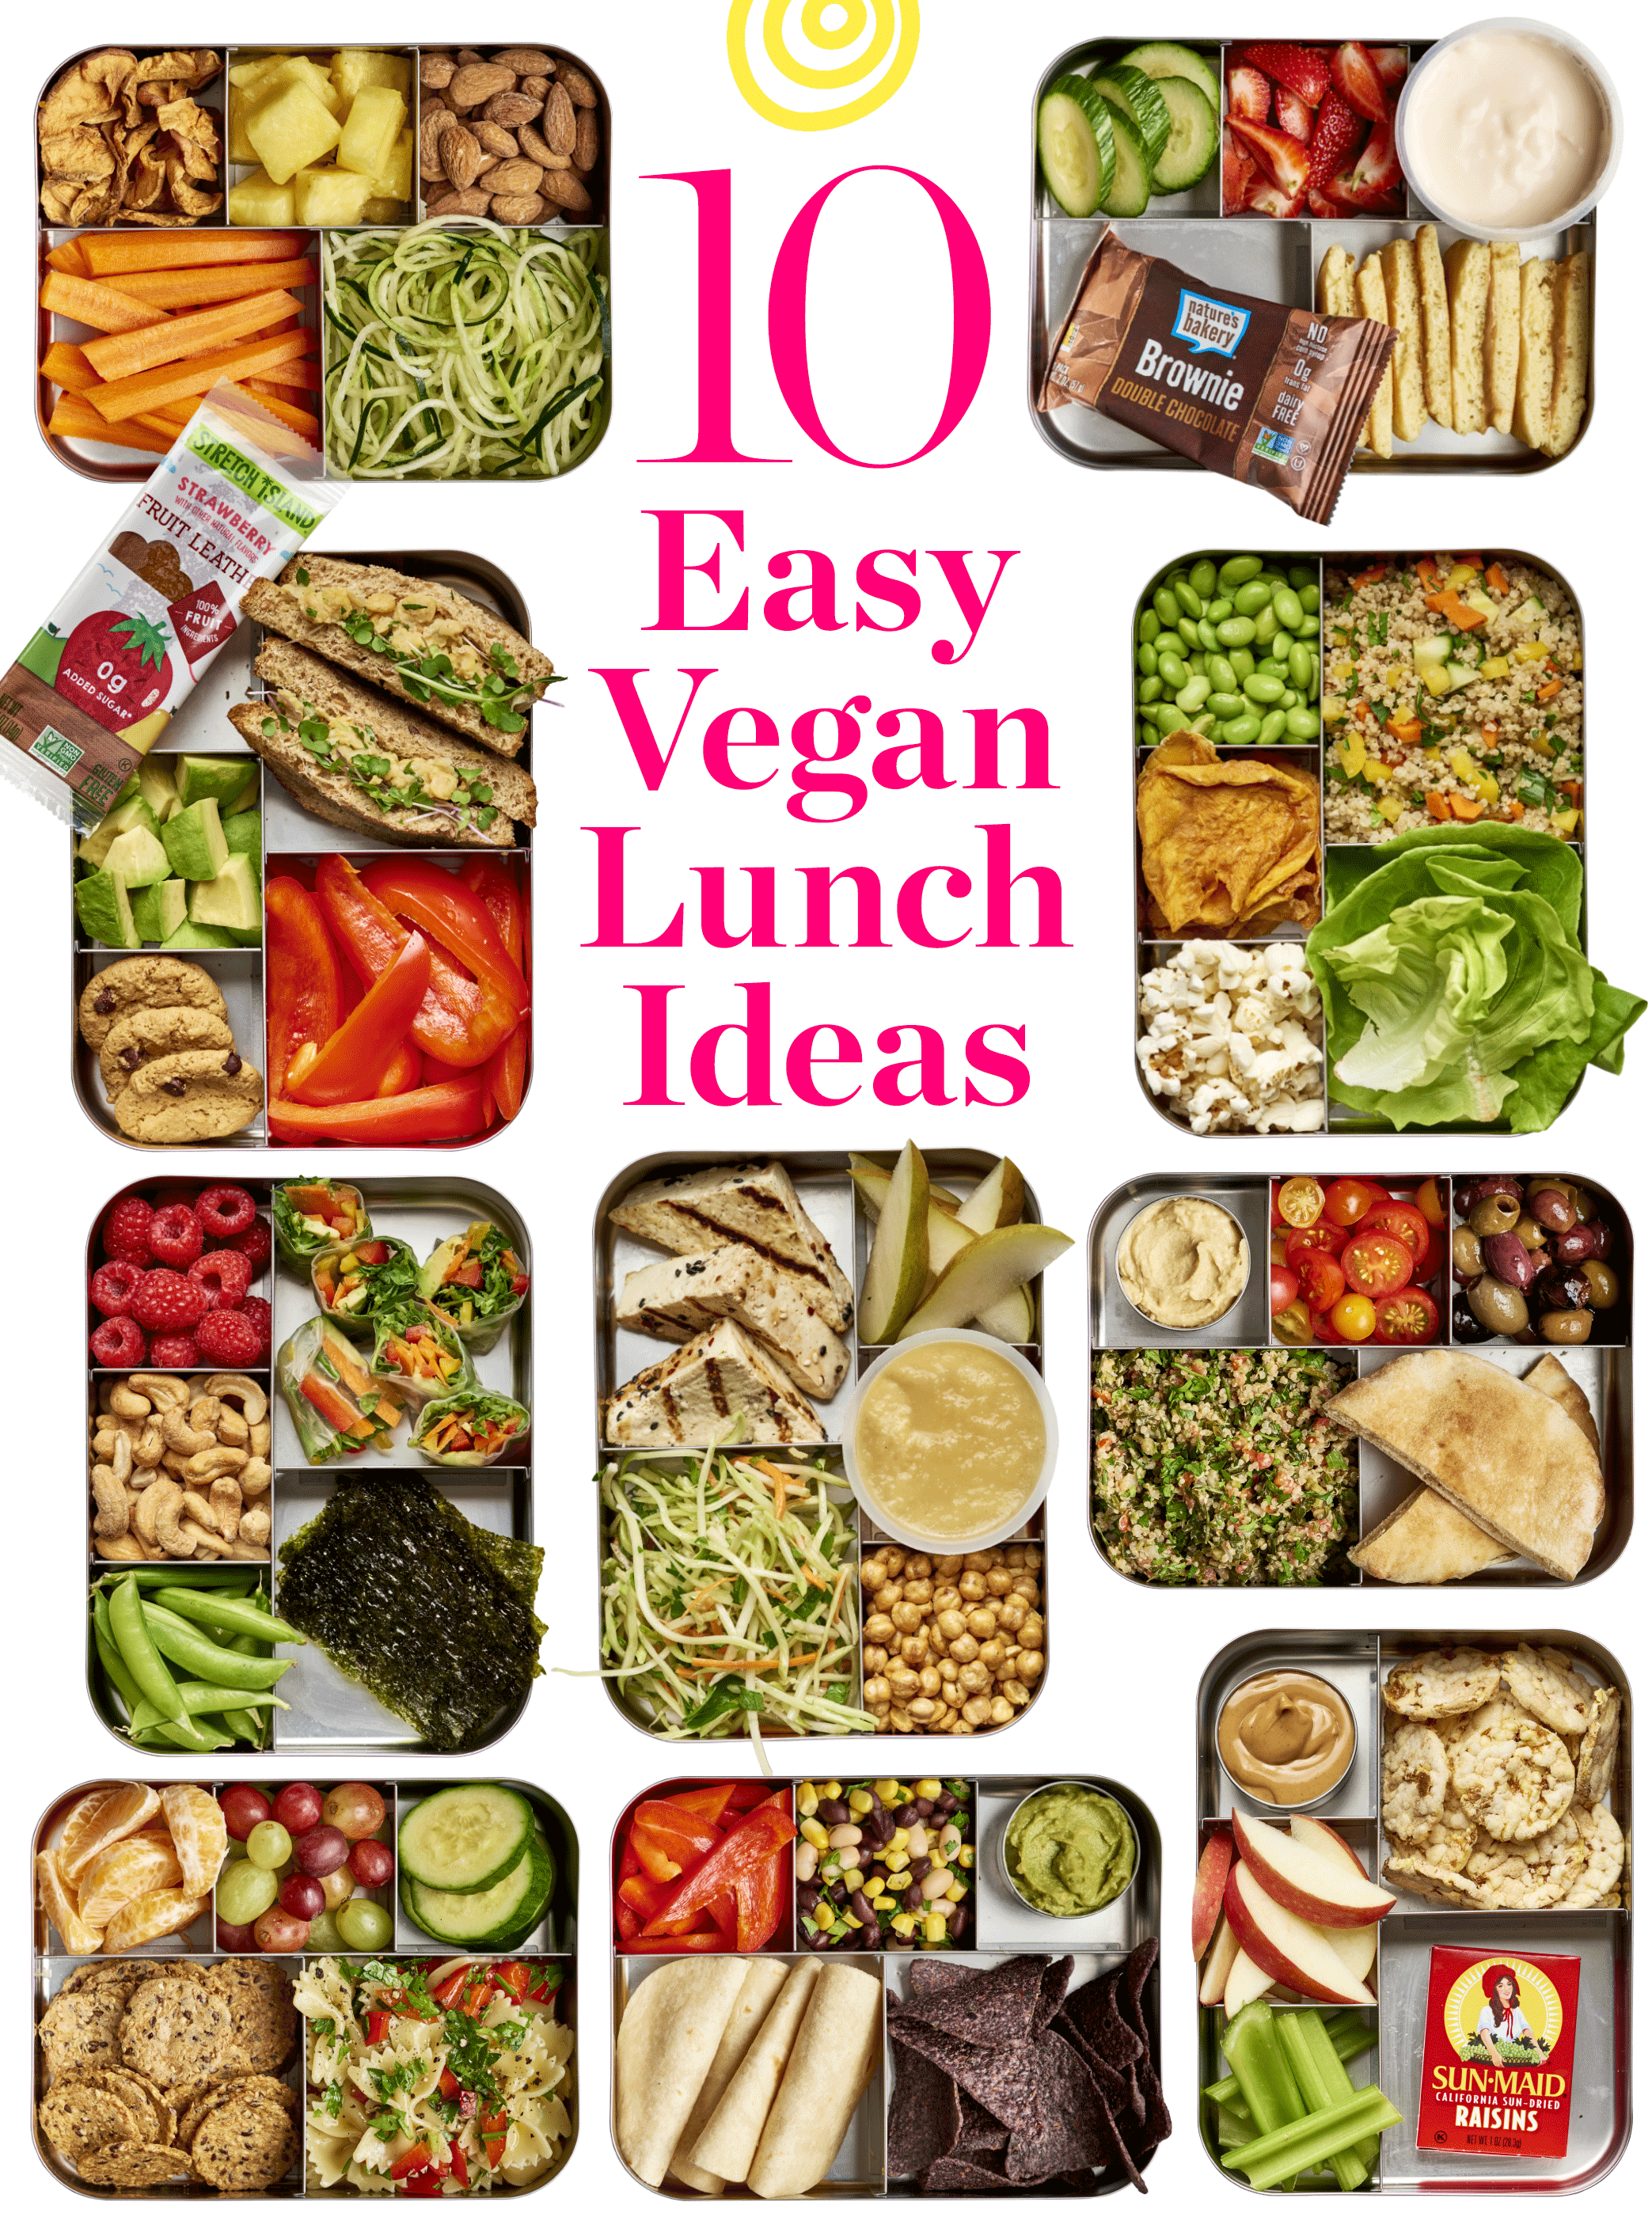 15+ Easy Vegan Lunch Ideas for Work